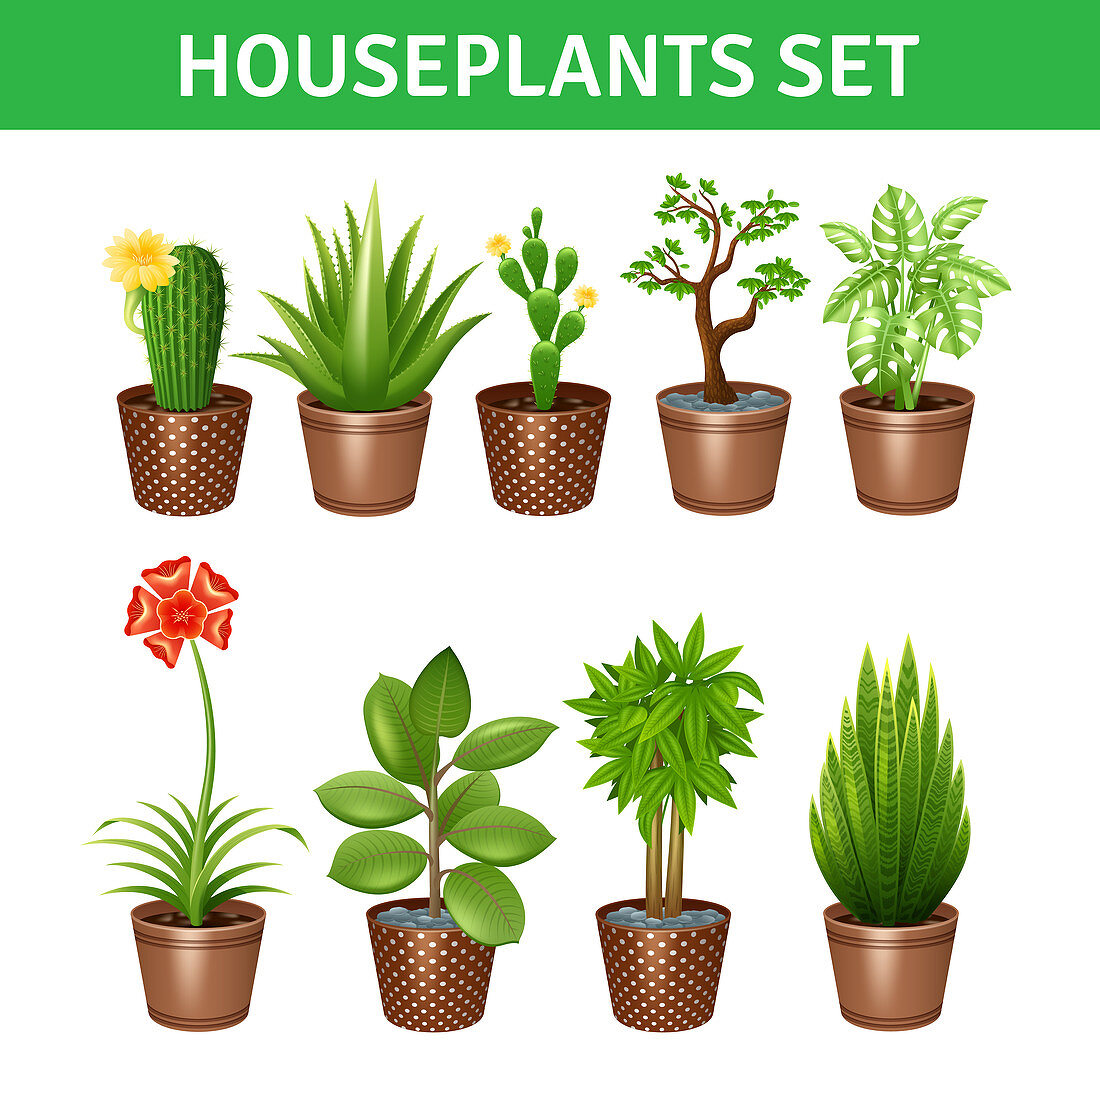 Houseplant icons, illustration